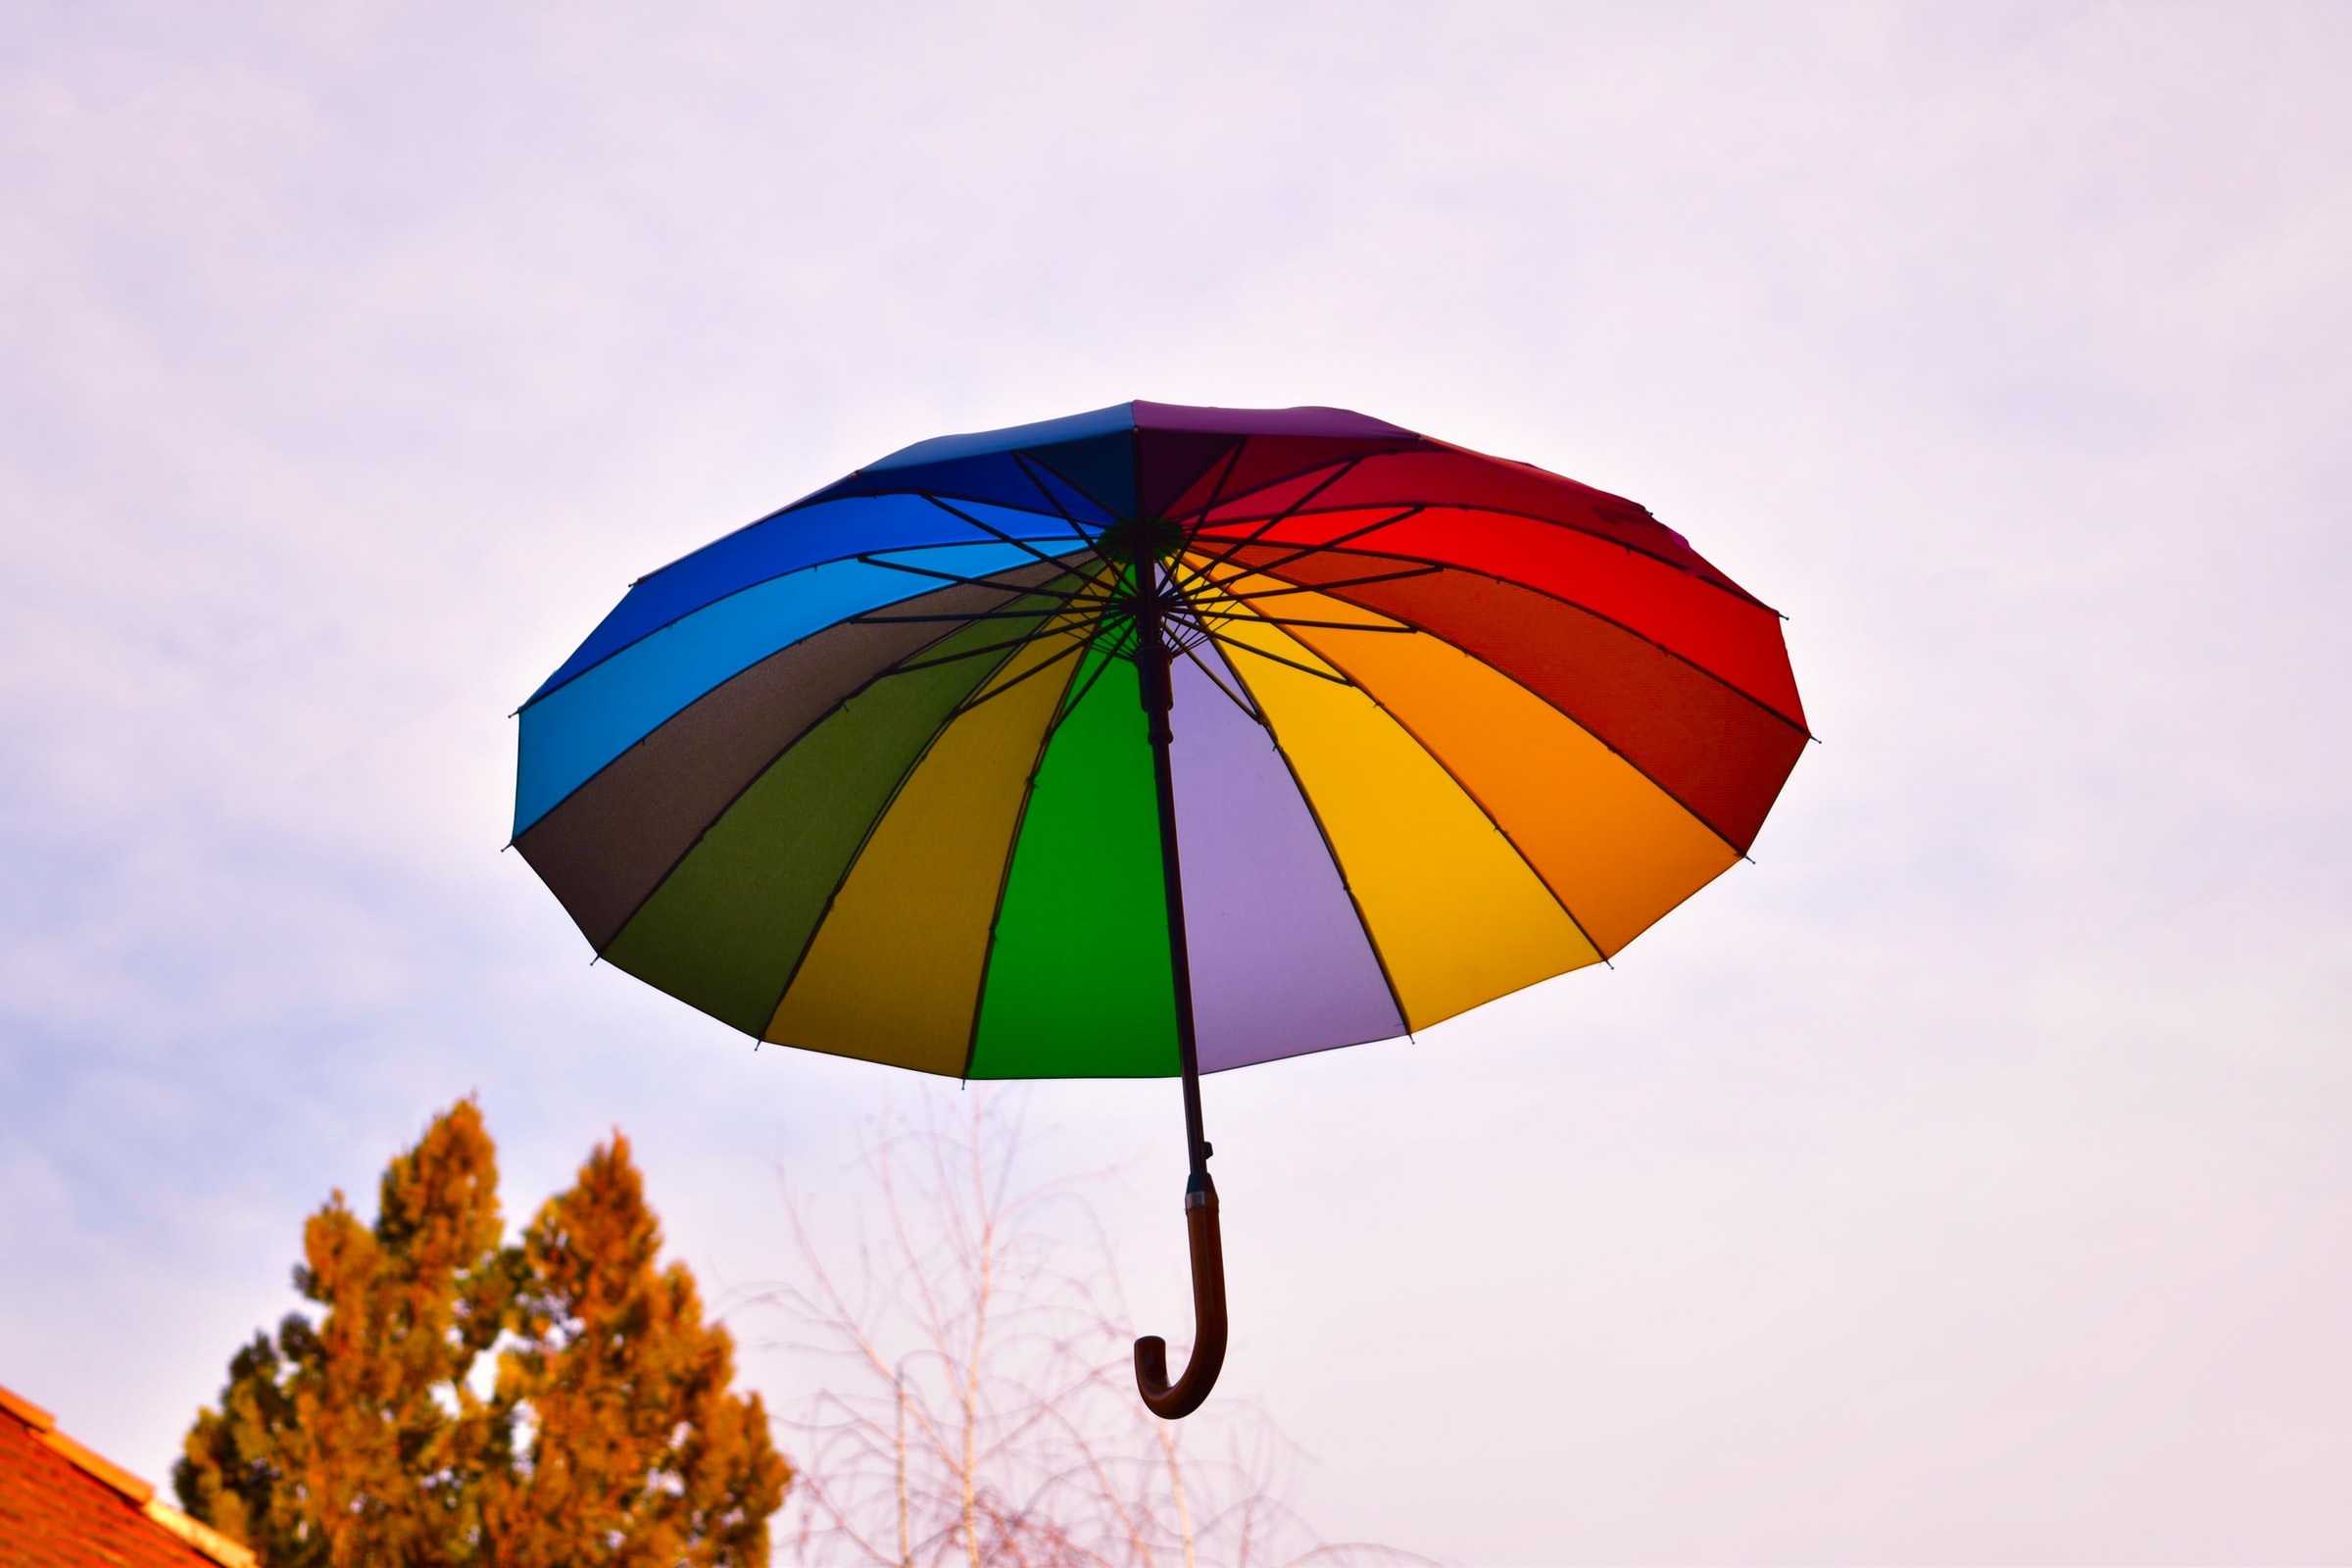 Fotografia di un ombrello colorato